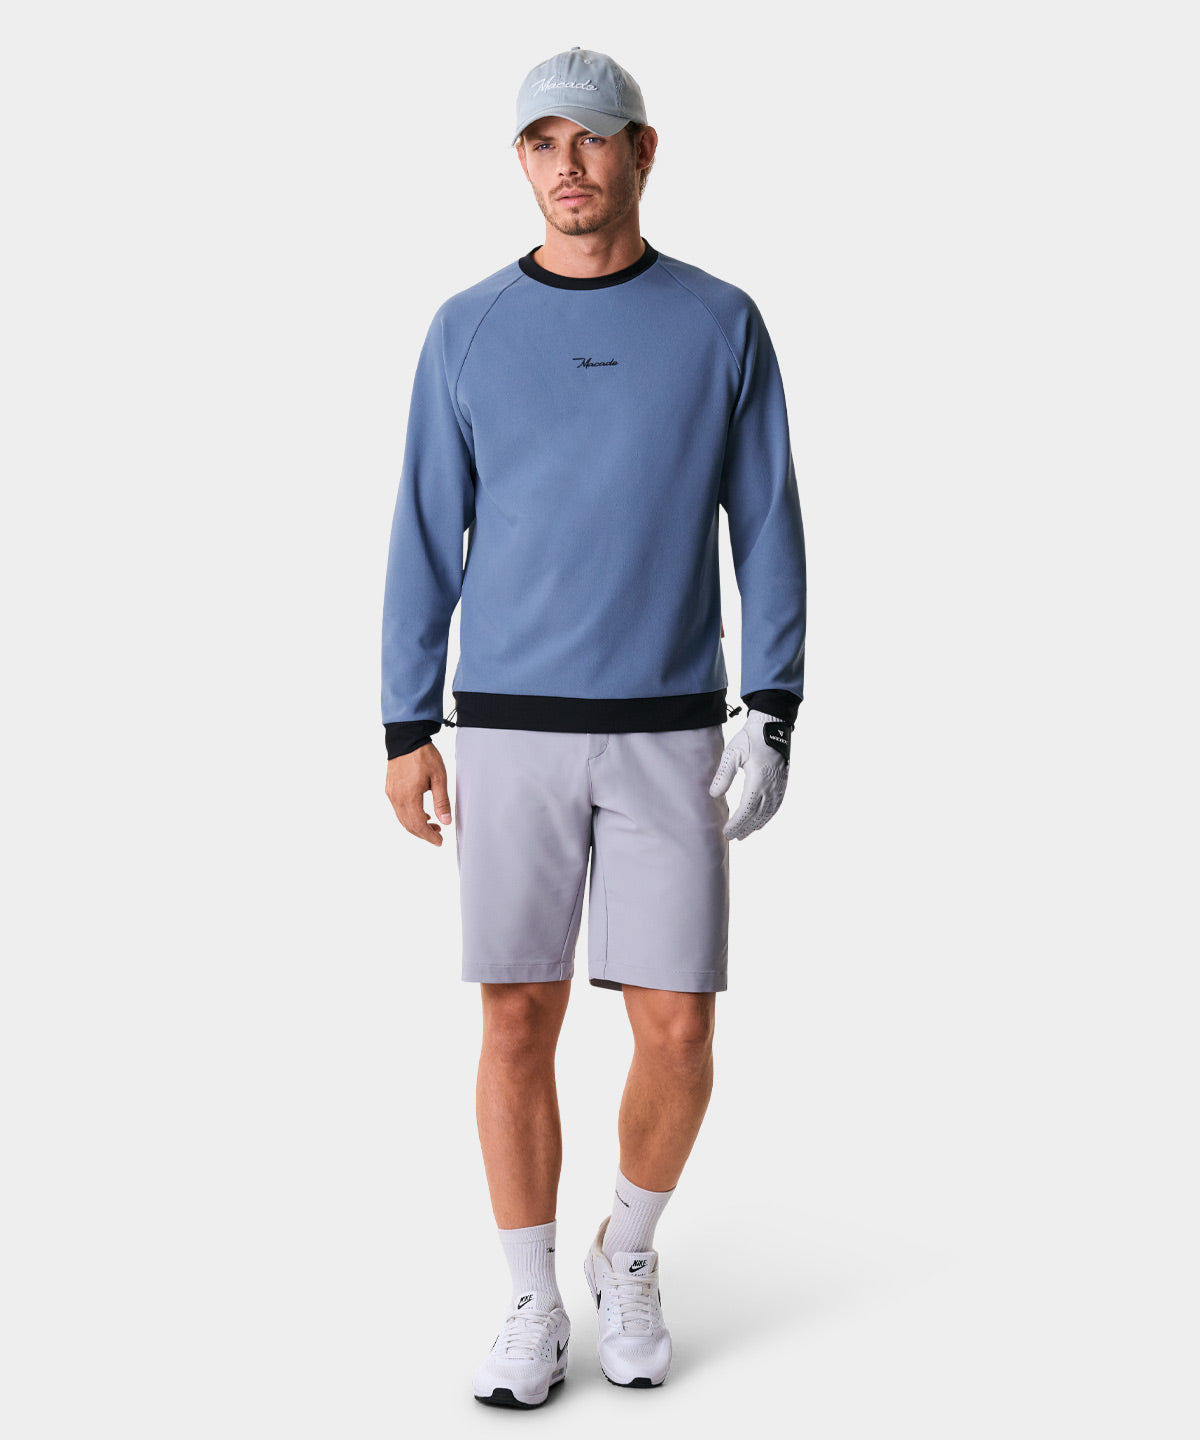 Ash Slate Tech Sweatshirt Macade Golf